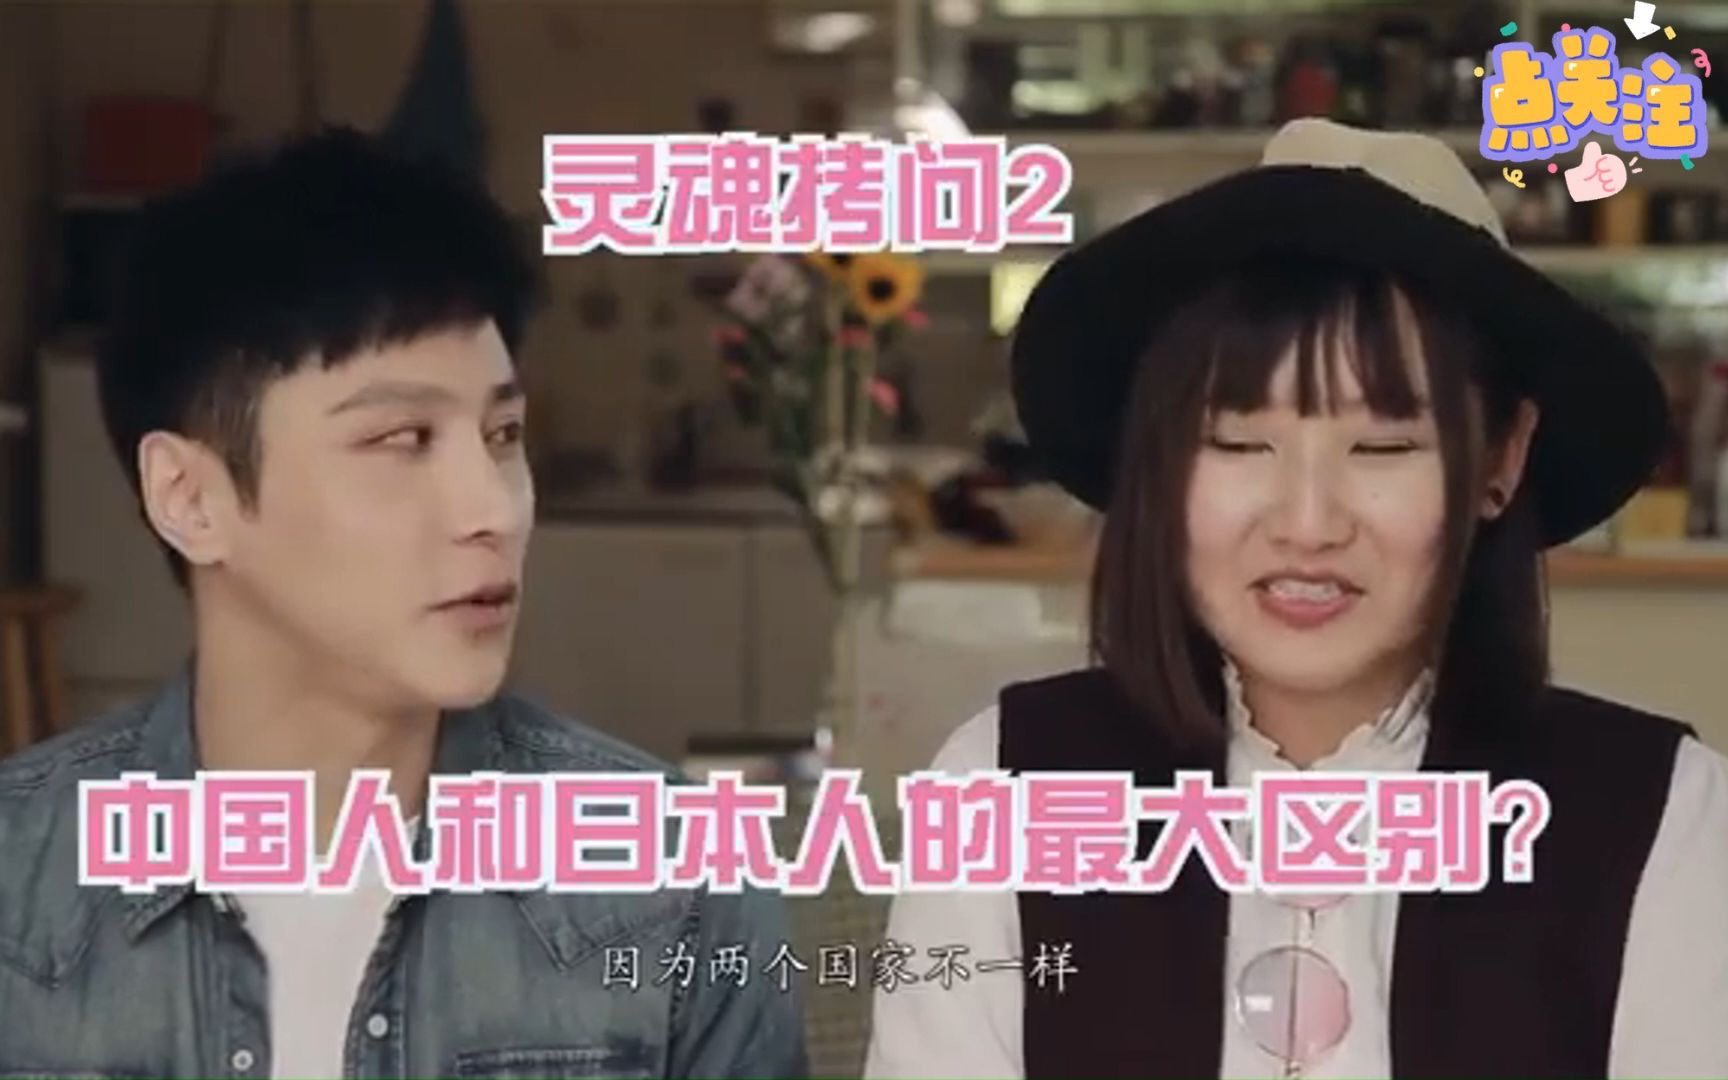 采访:日本妹子如何看待中国汉子和妹子呢?浅聊中日两国人不同之处